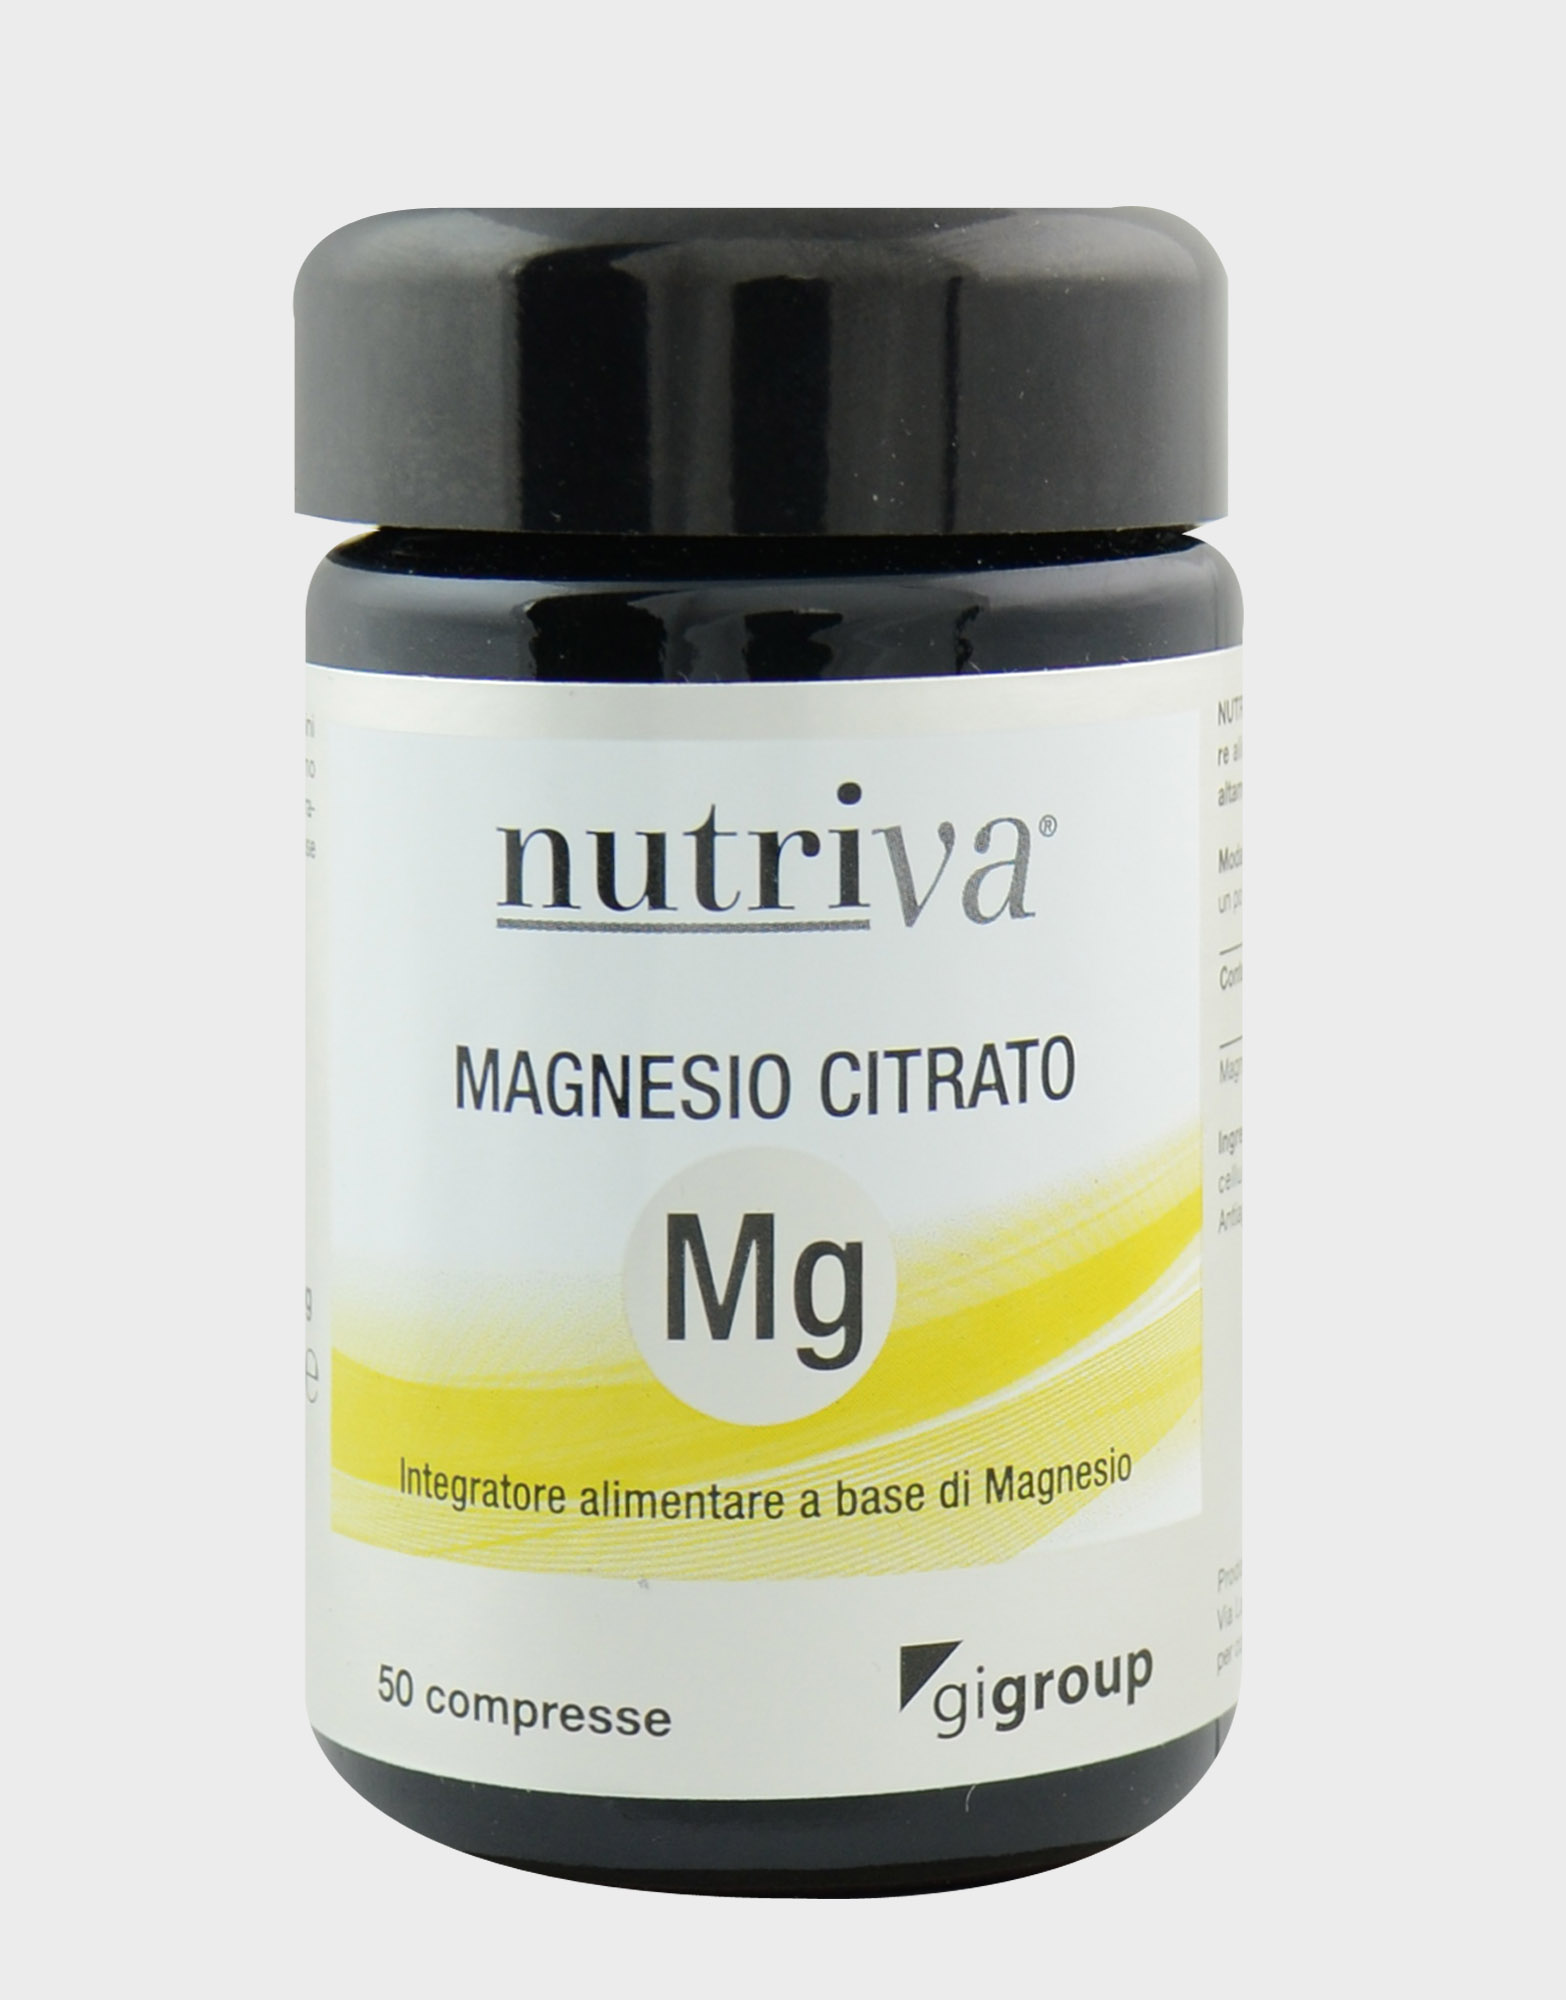 NUTRIVA magnesio citrato 50 compresse